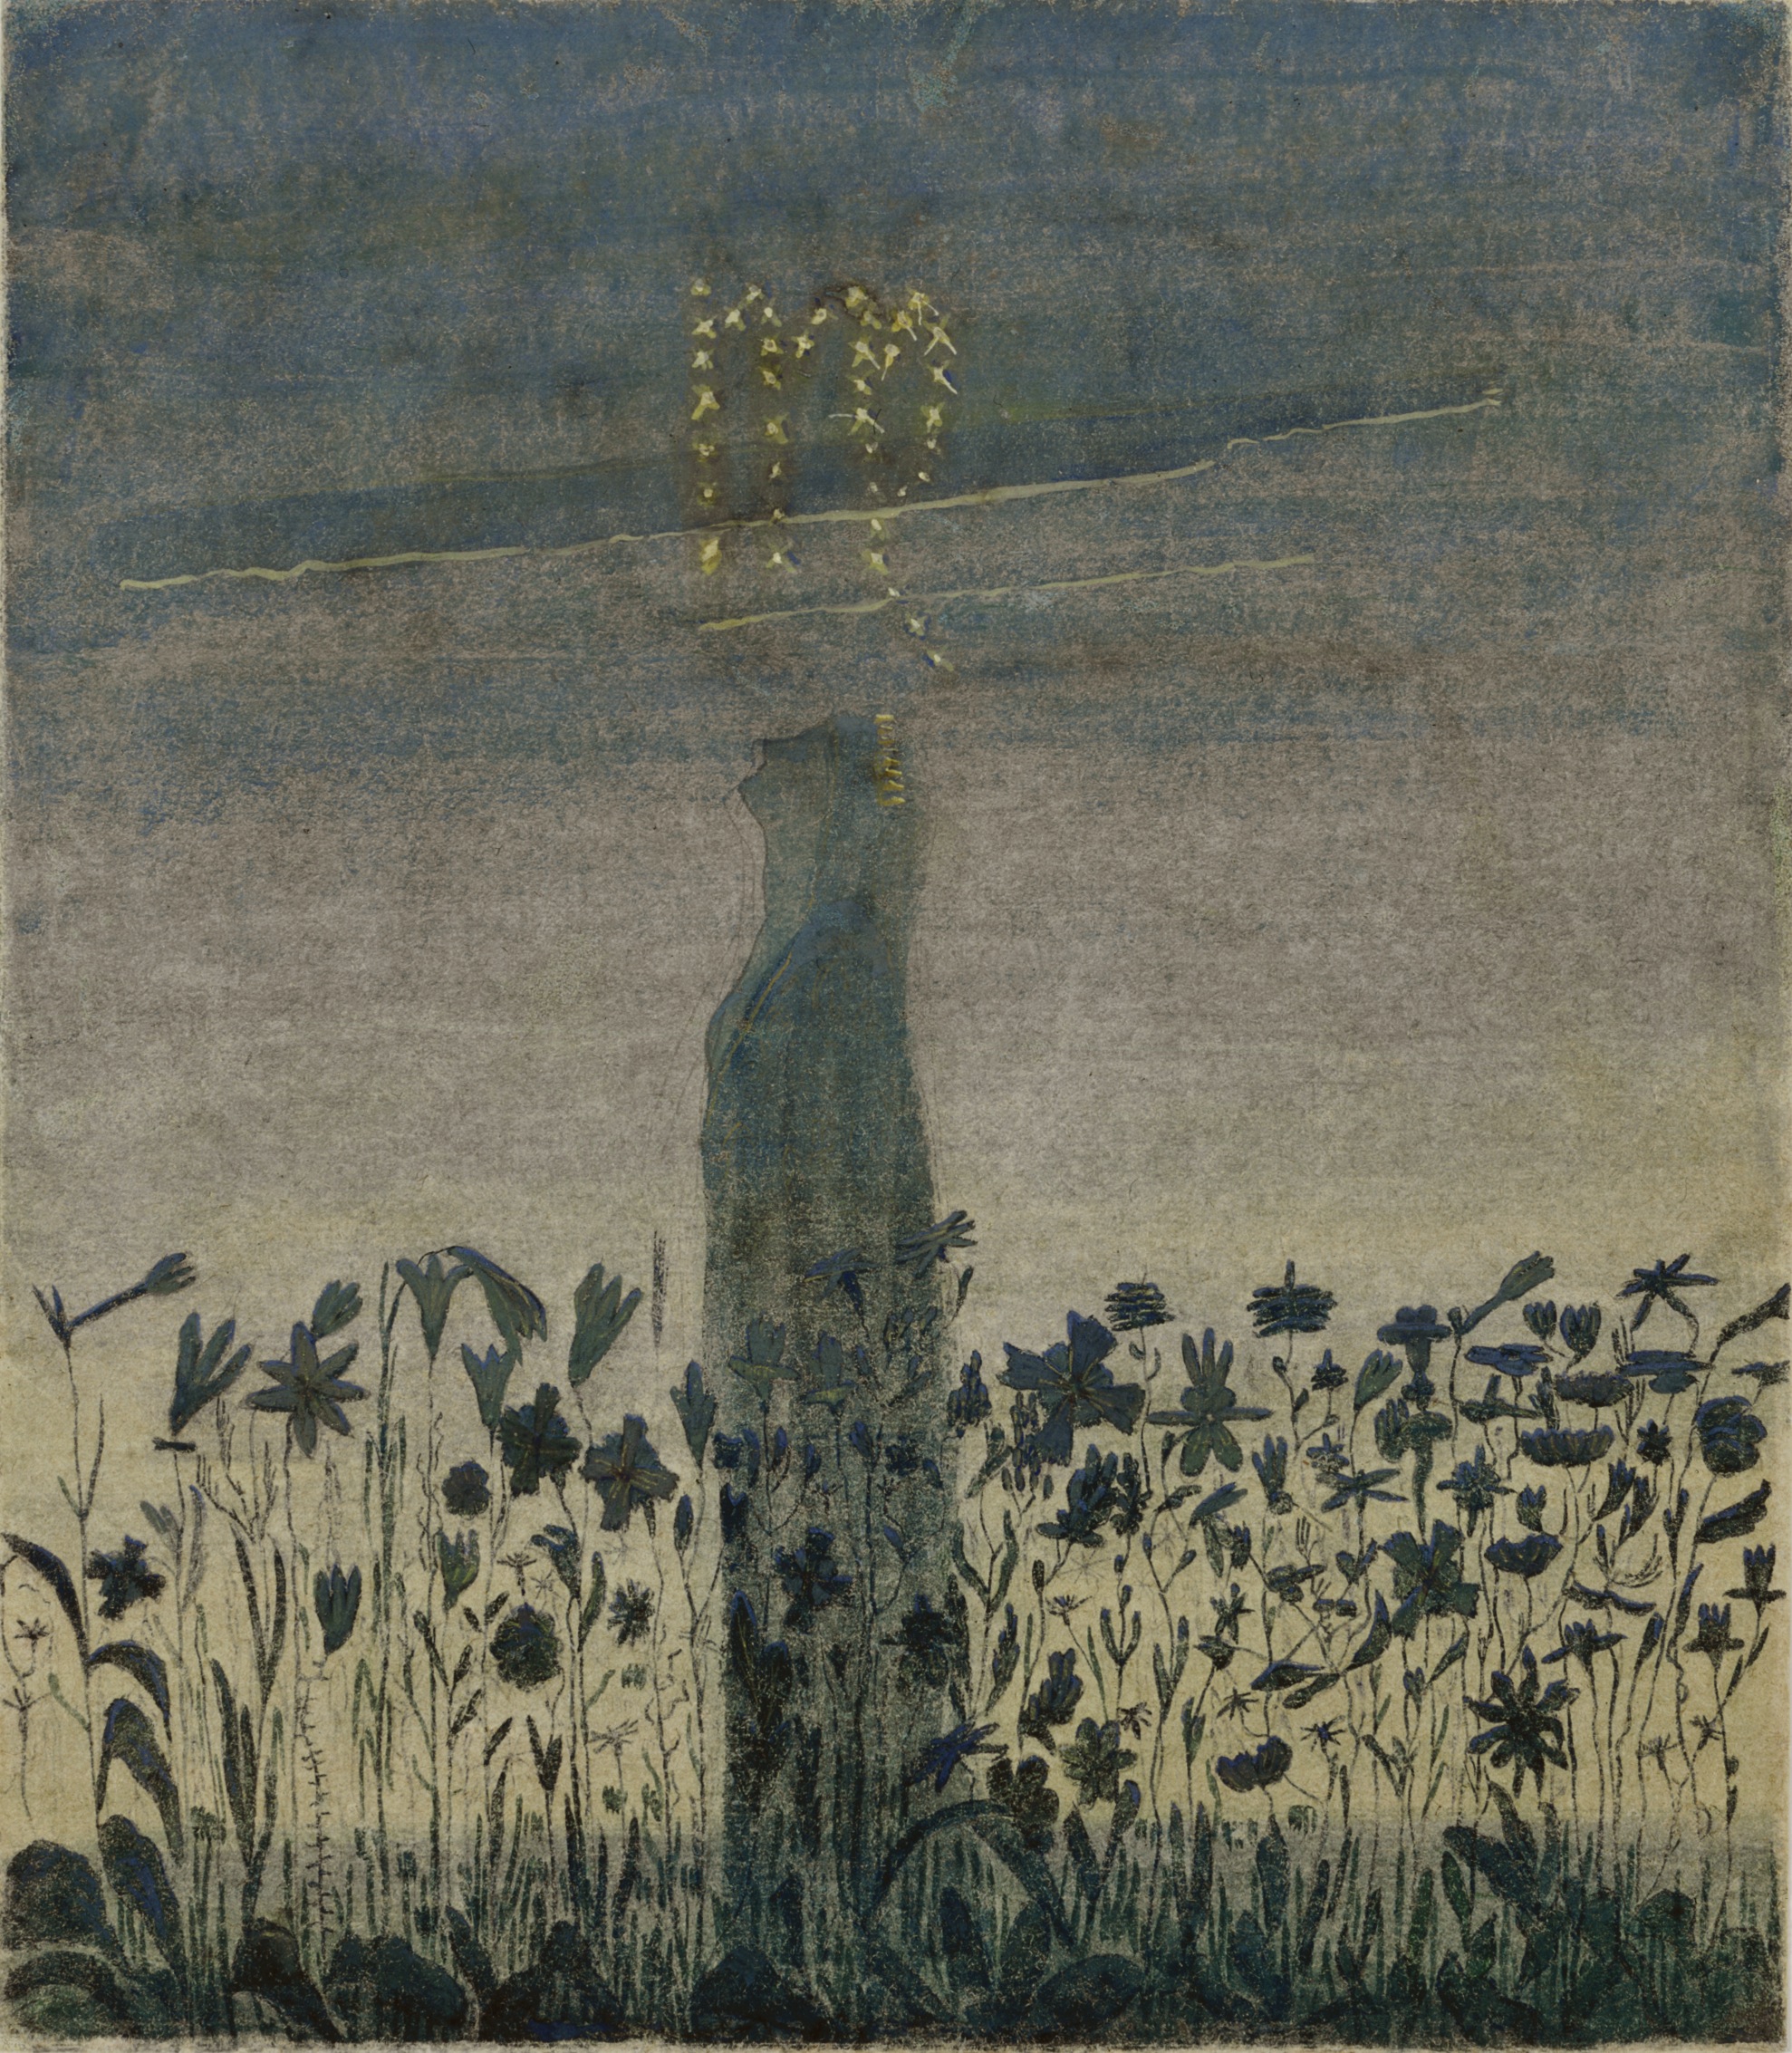 Die Sonne passiert das Zeichen der Jungfrau by Mikalojus Konstantinas Čiurlionis - 1906 - 35,6 x 31,3 cm Mikalojus-Konstantinos-Čiurlionis-Kunstmuseum